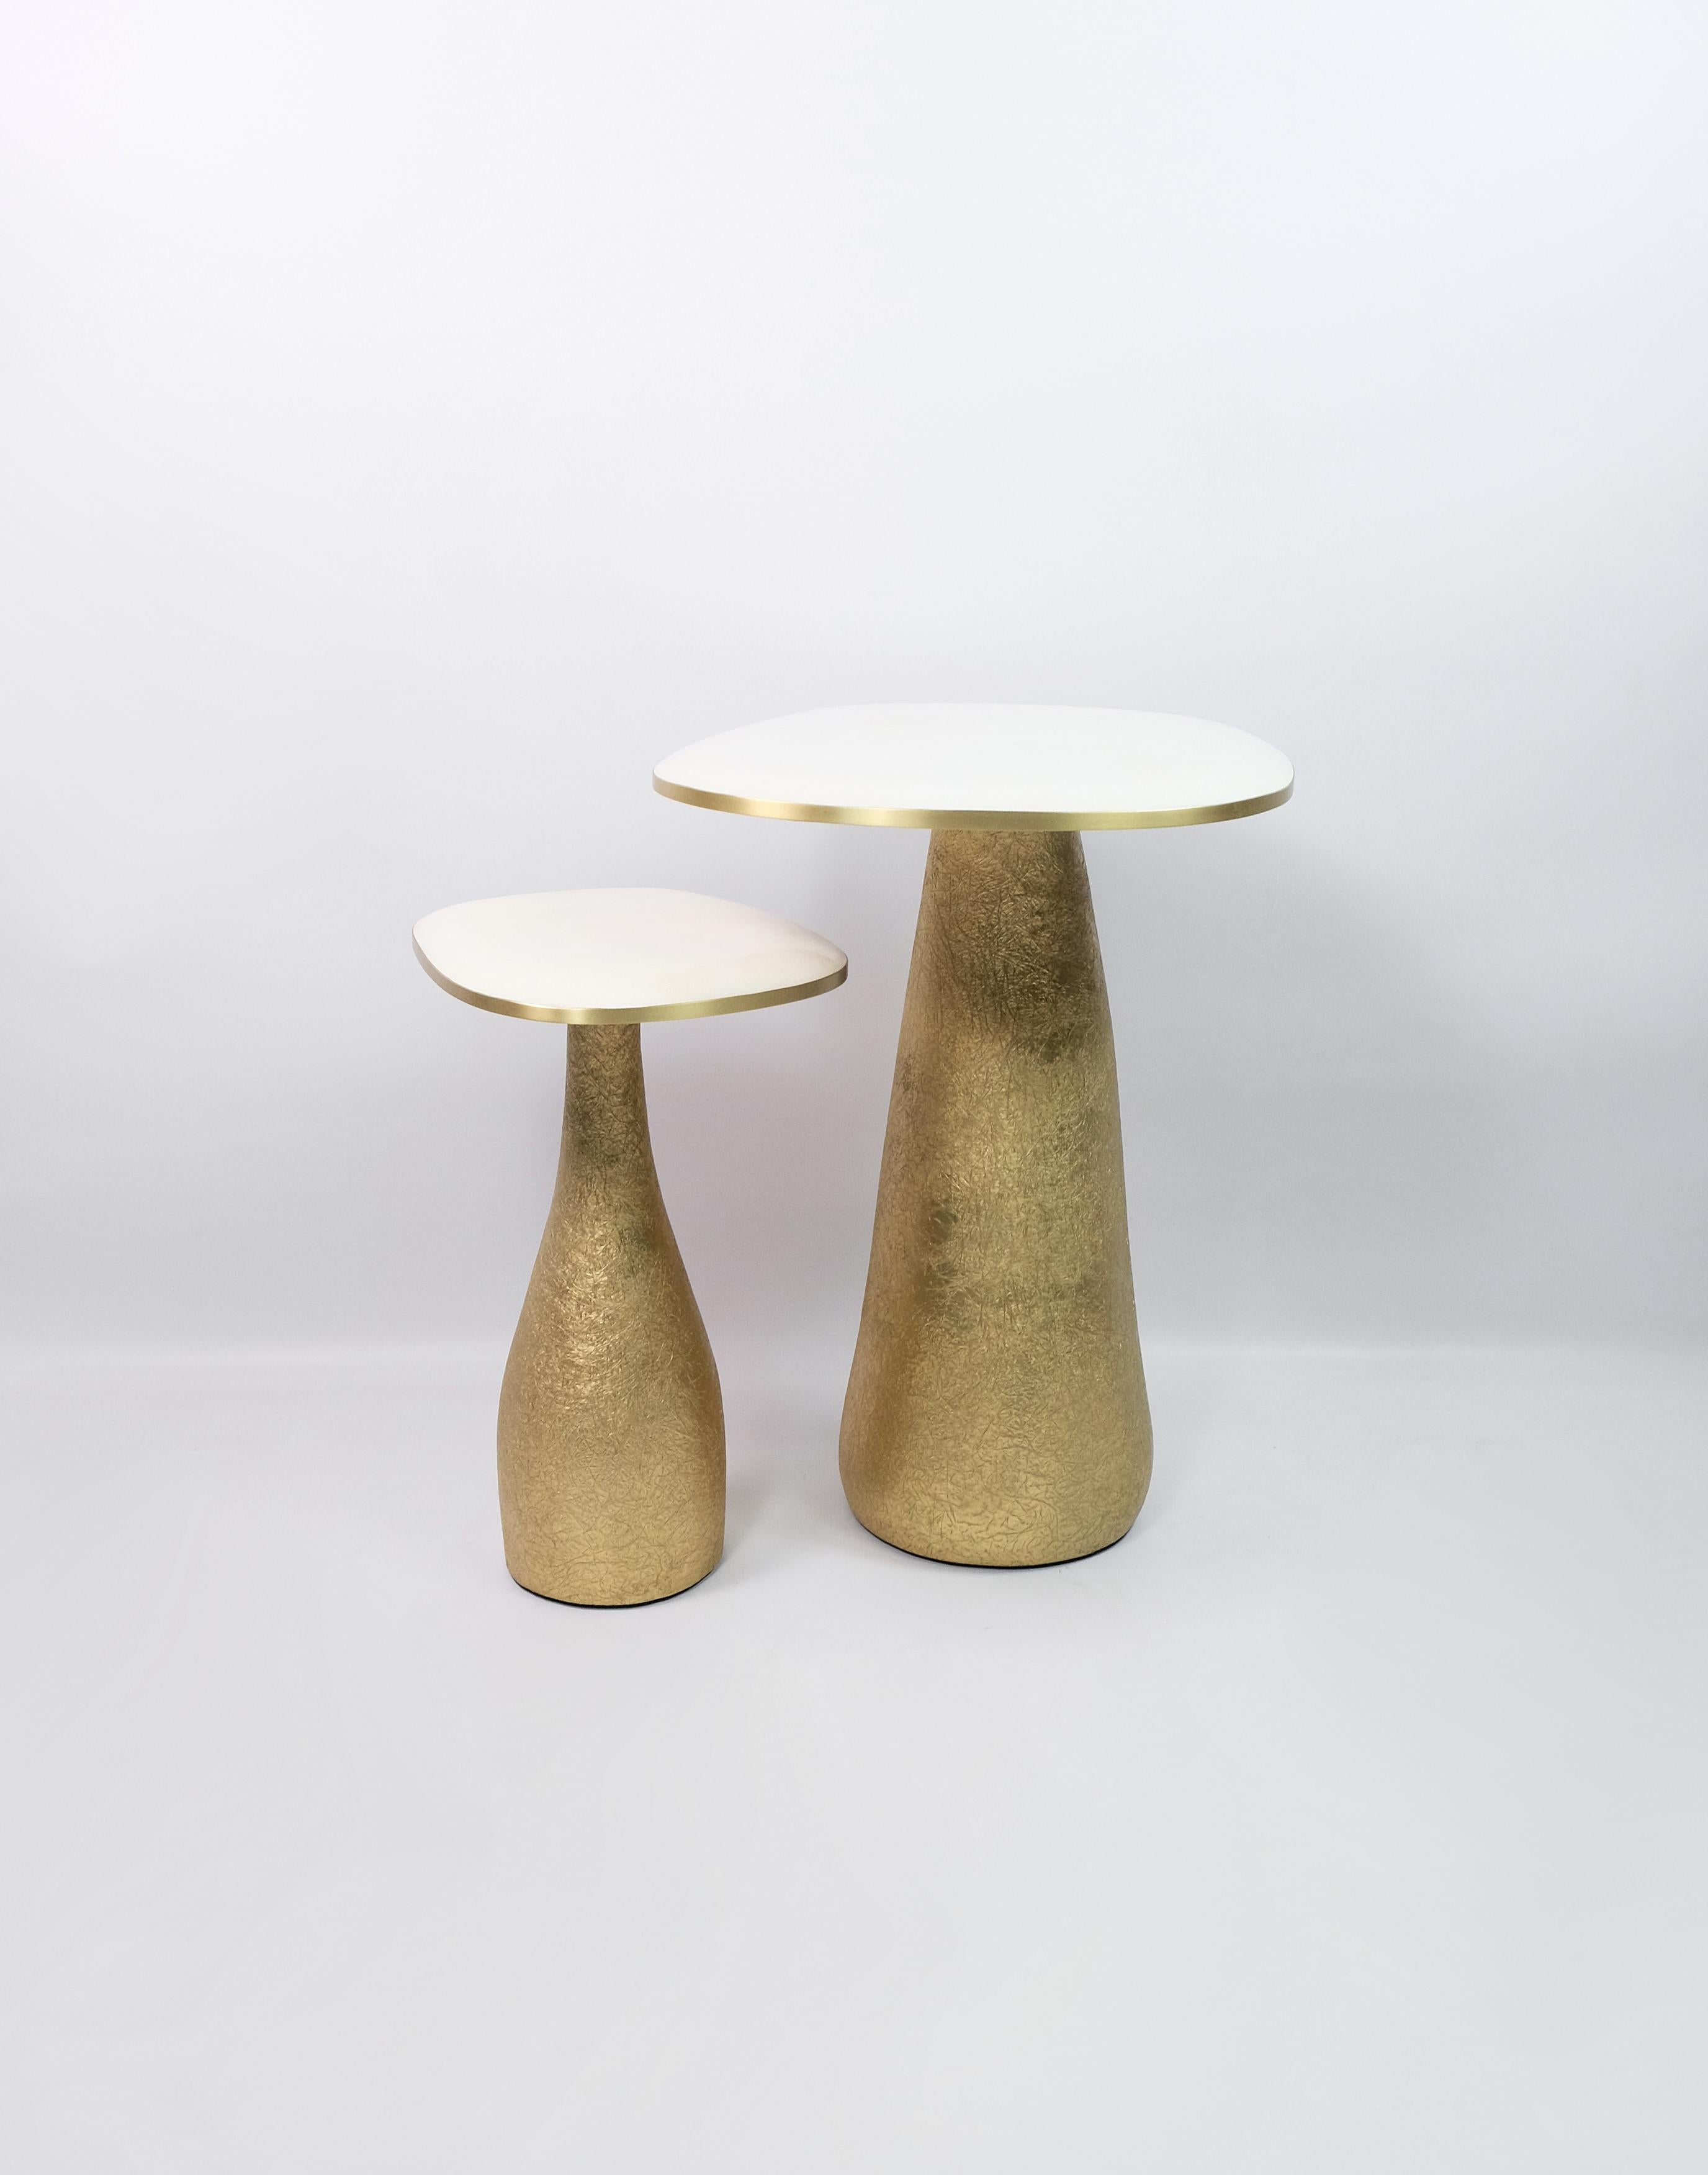 Ce set de 2 tables est composé d'un plateau en marqueterie de cristal de roche blanc avec des garnitures en laiton.
La base est en bois avec une incrustation de fibres de verre semi-brutes dorées.
La finition semi-brute apporte une texture